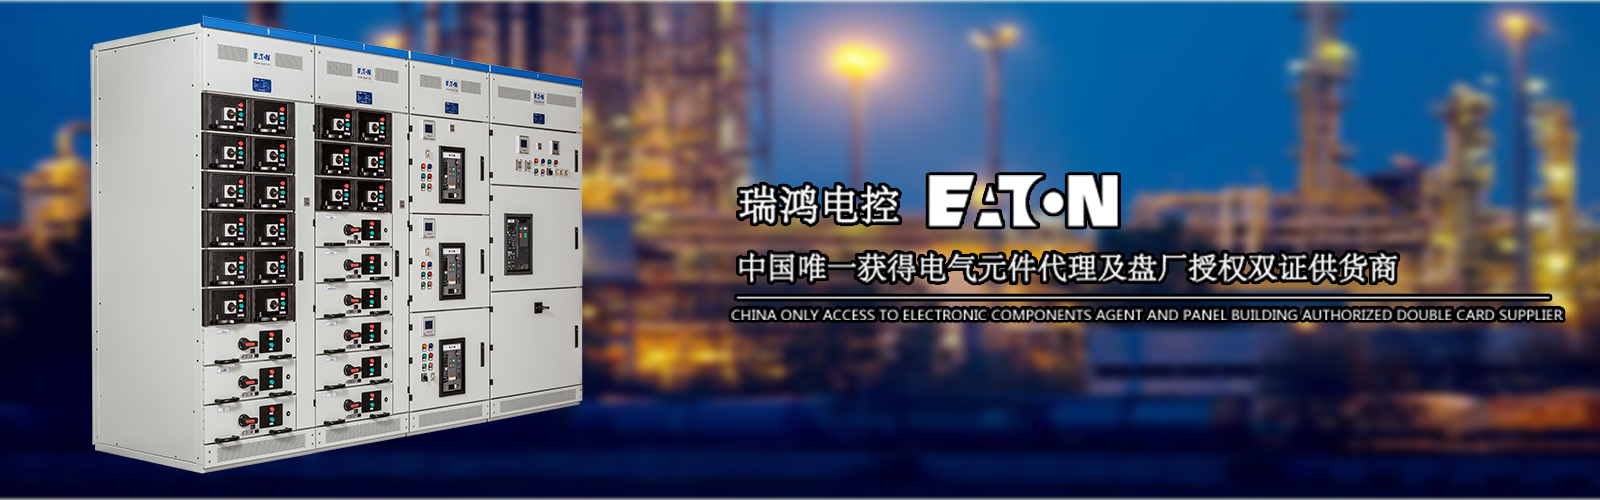 瑞鸿电控设备北京有限公司,瑞鸿电控,机箱机柜